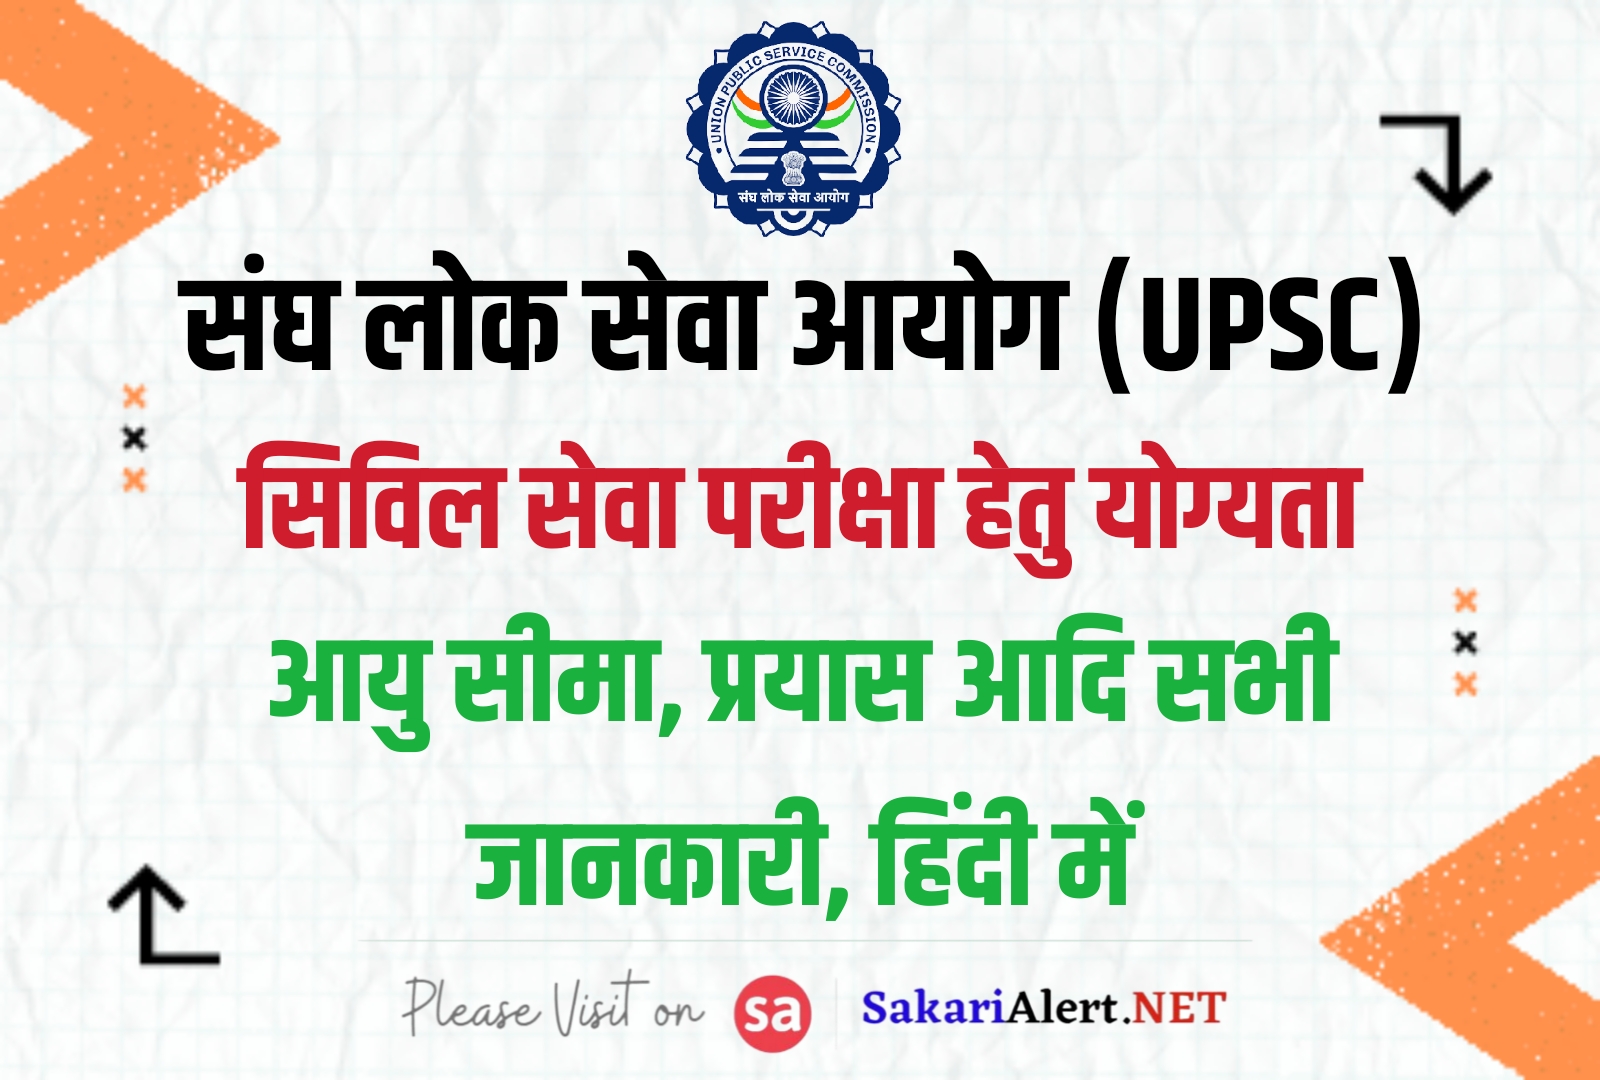 Qualification For UPSC Exam - यूपीएससी सिविल सेवा परीक्षा हेतु योग्यता, जानें